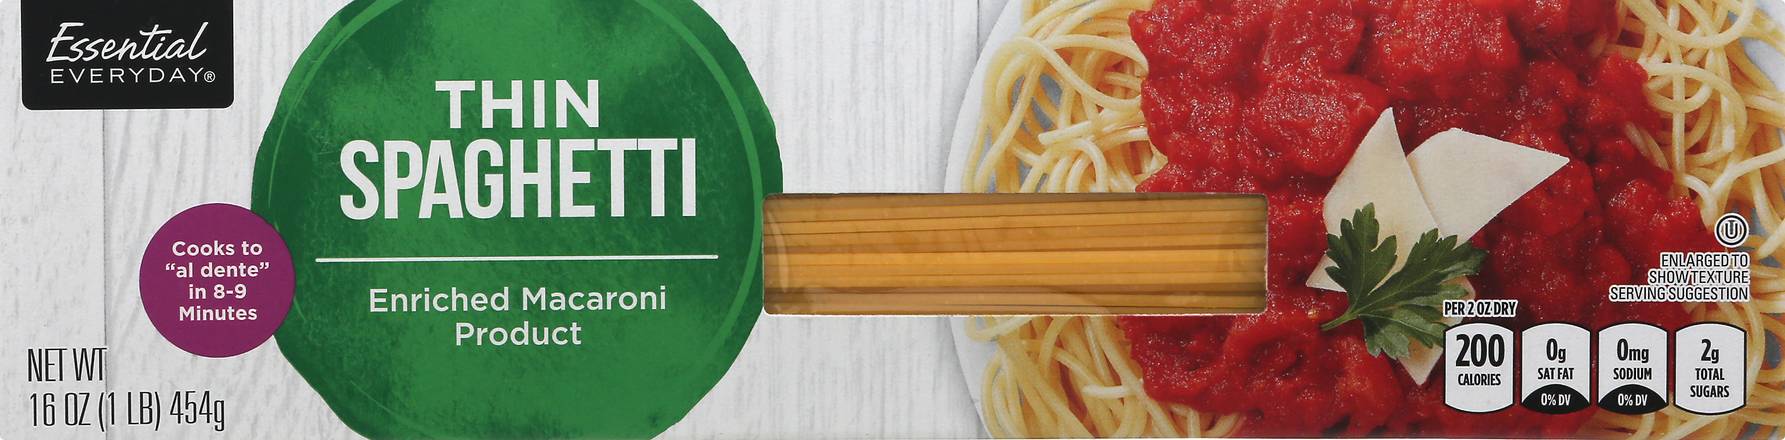 Essential Everyday Thin Spaghetti